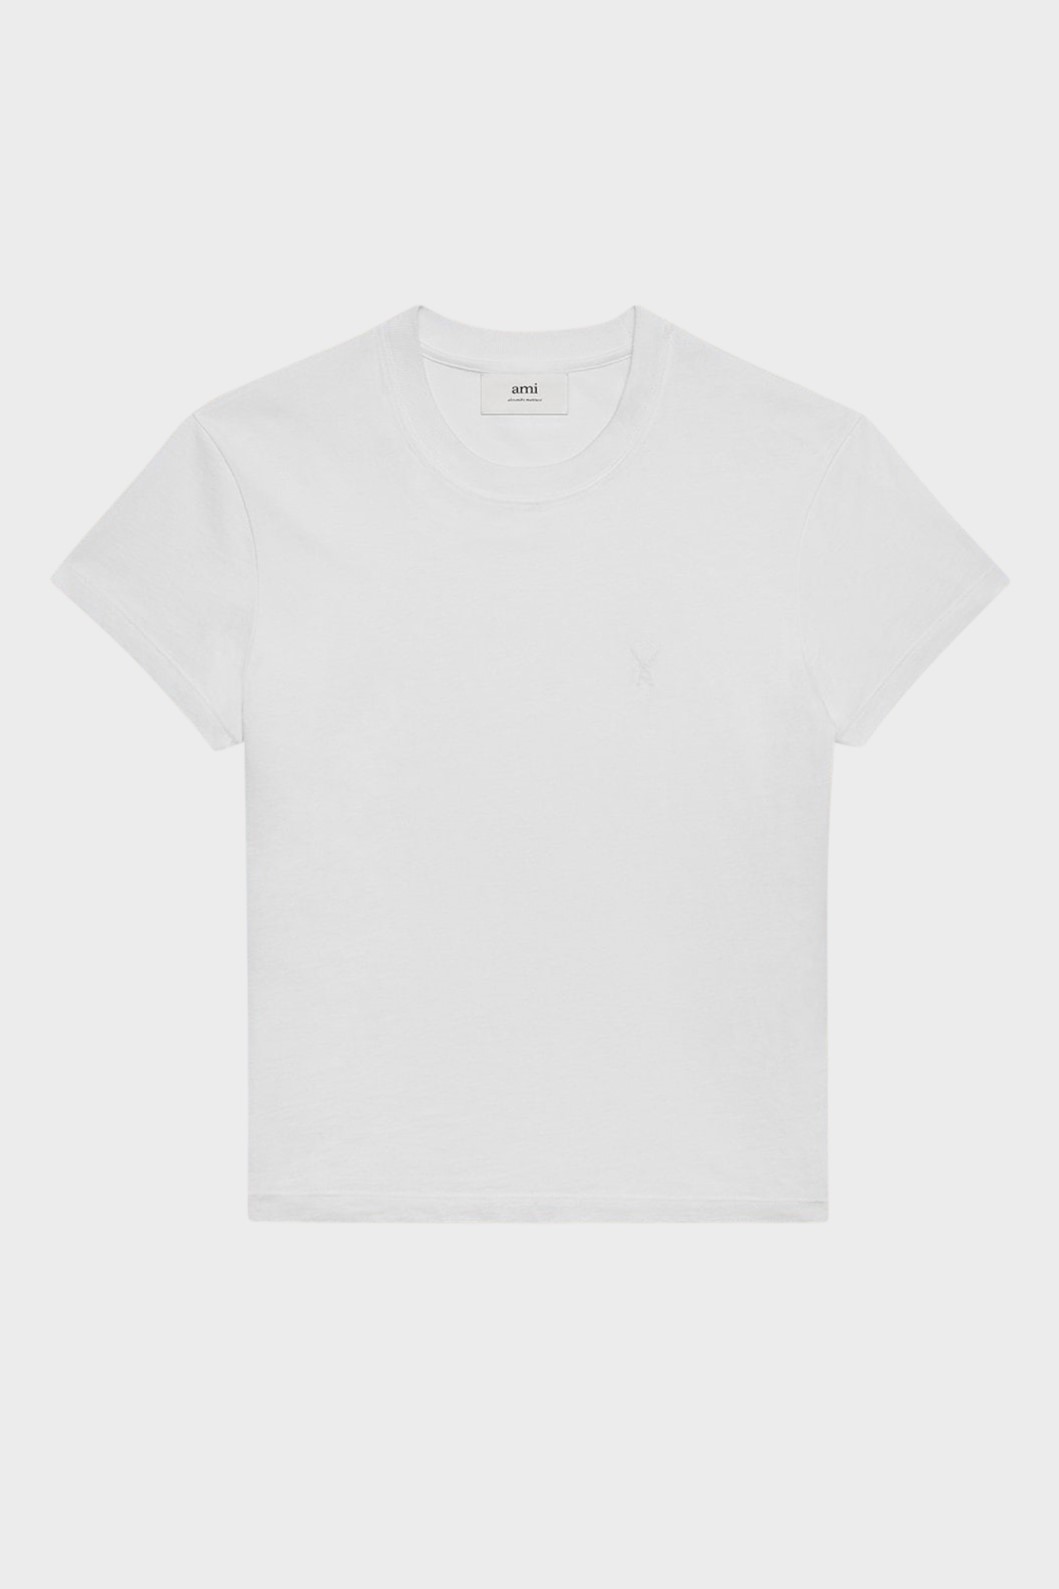 AMI PARIS de Coeur T-Shirt in White 3XL